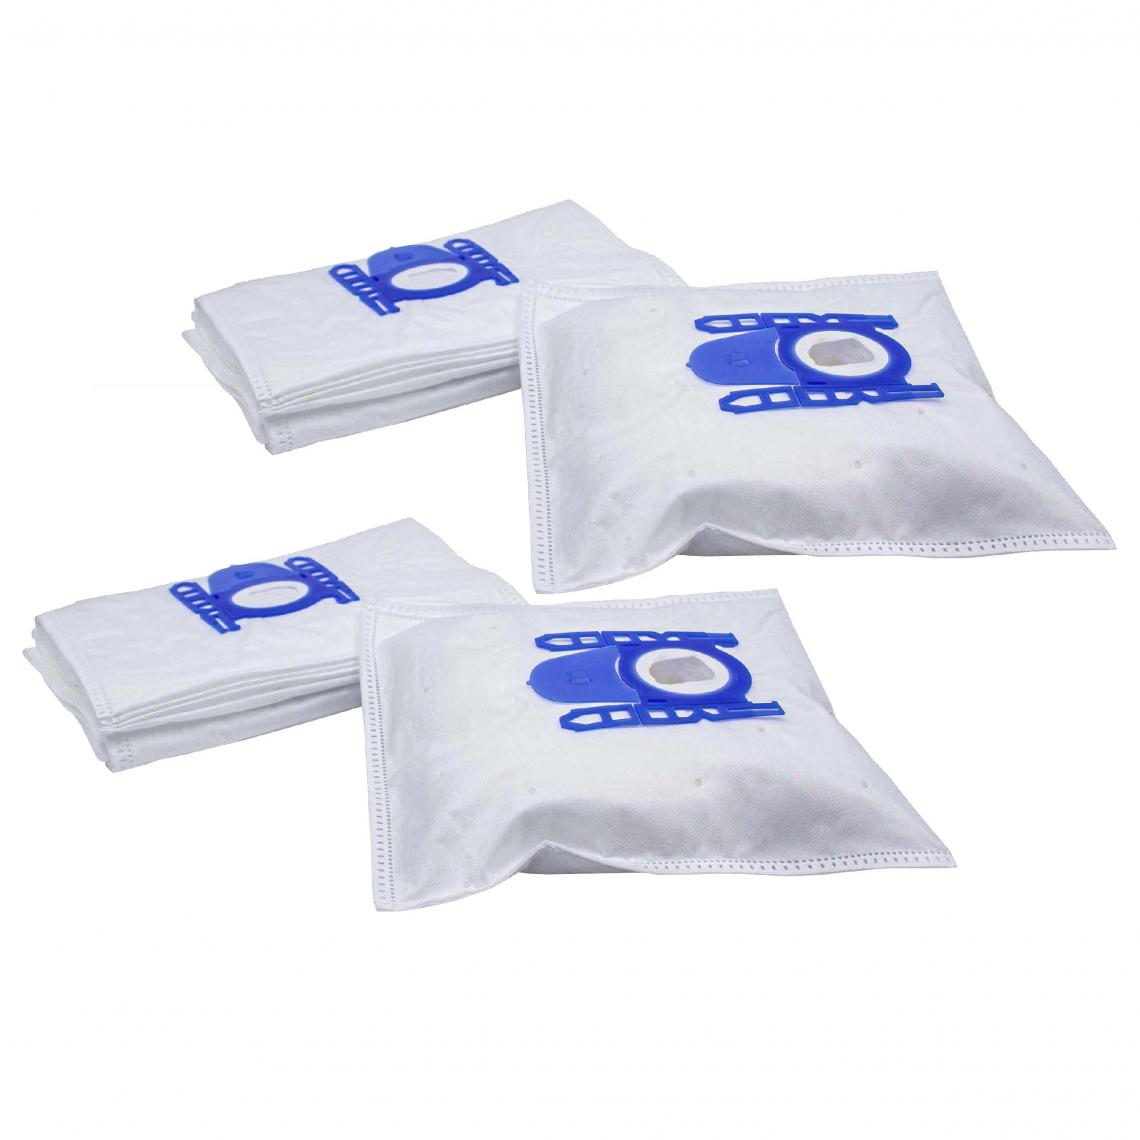 Vhbw - vhbw 20x Sacs compatible avec Girmi Rotocraft aspirateur - microfibres non tissées, 27cm x 20cm, blanc / bleu - Accessoire entretien des sols